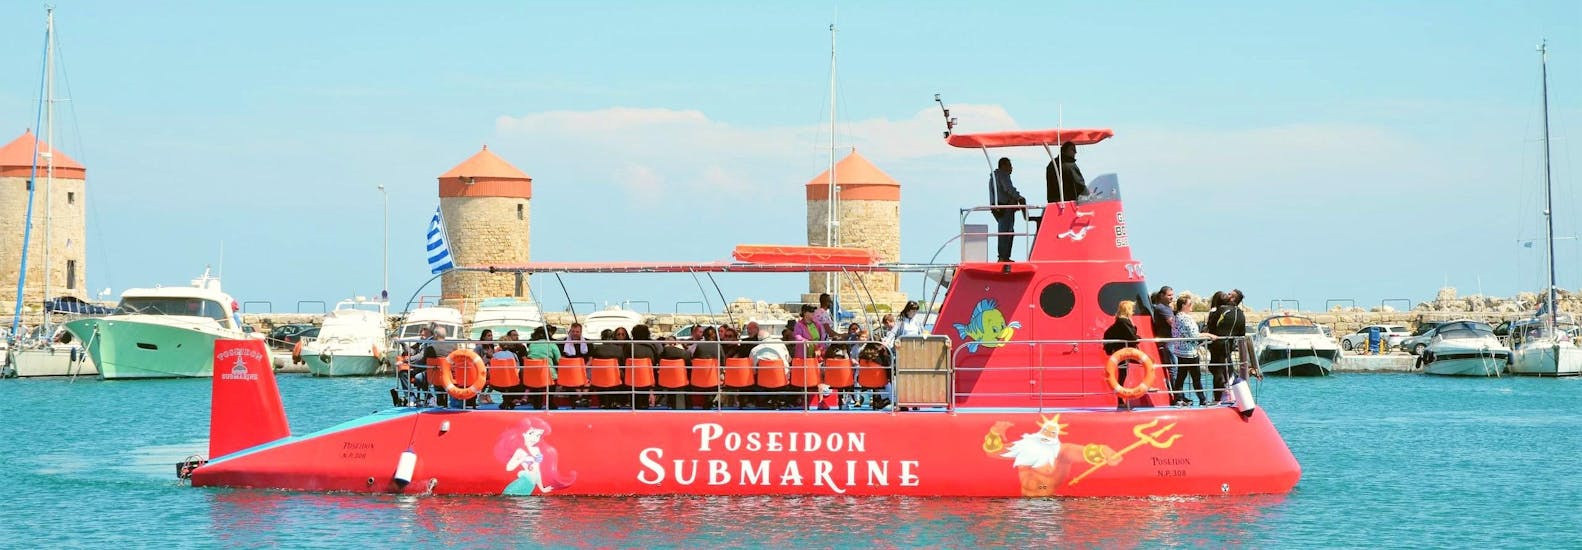 Das Halb-U-Boot von Poseidon Submarine Rhodos verlässt den Hafen von Mandraki.